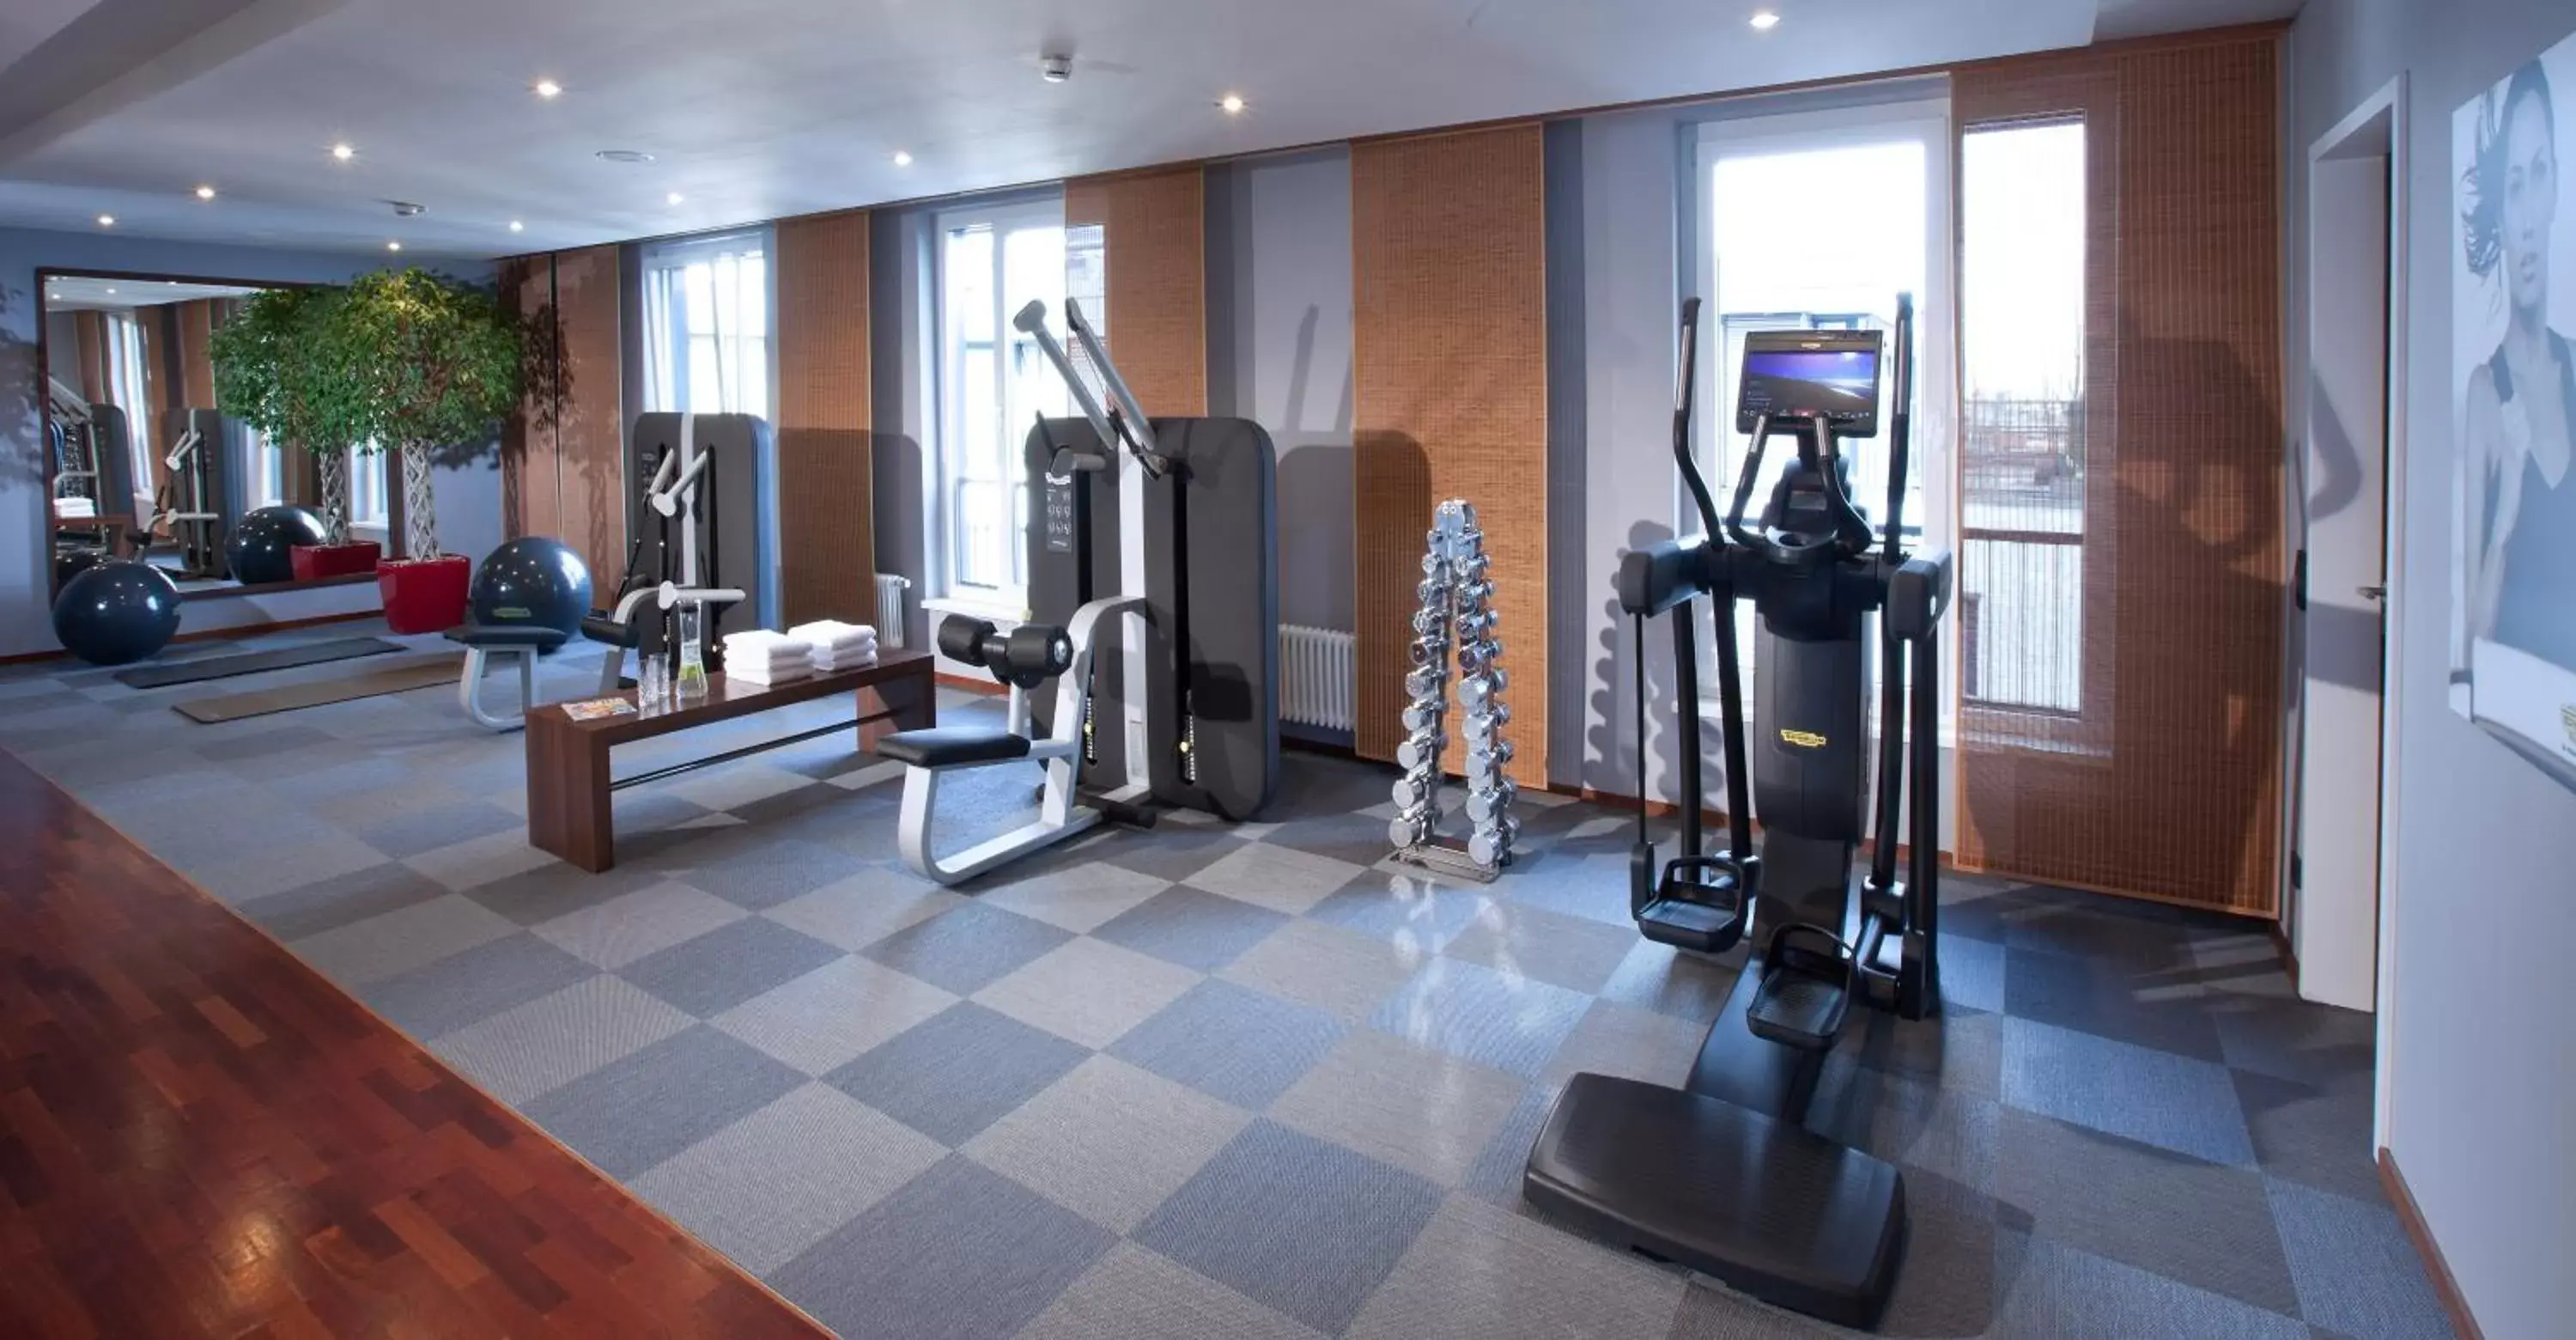 Fitness centre/facilities in Lindner Hotel Hamburg am Michel, part of JdV by Hyatt